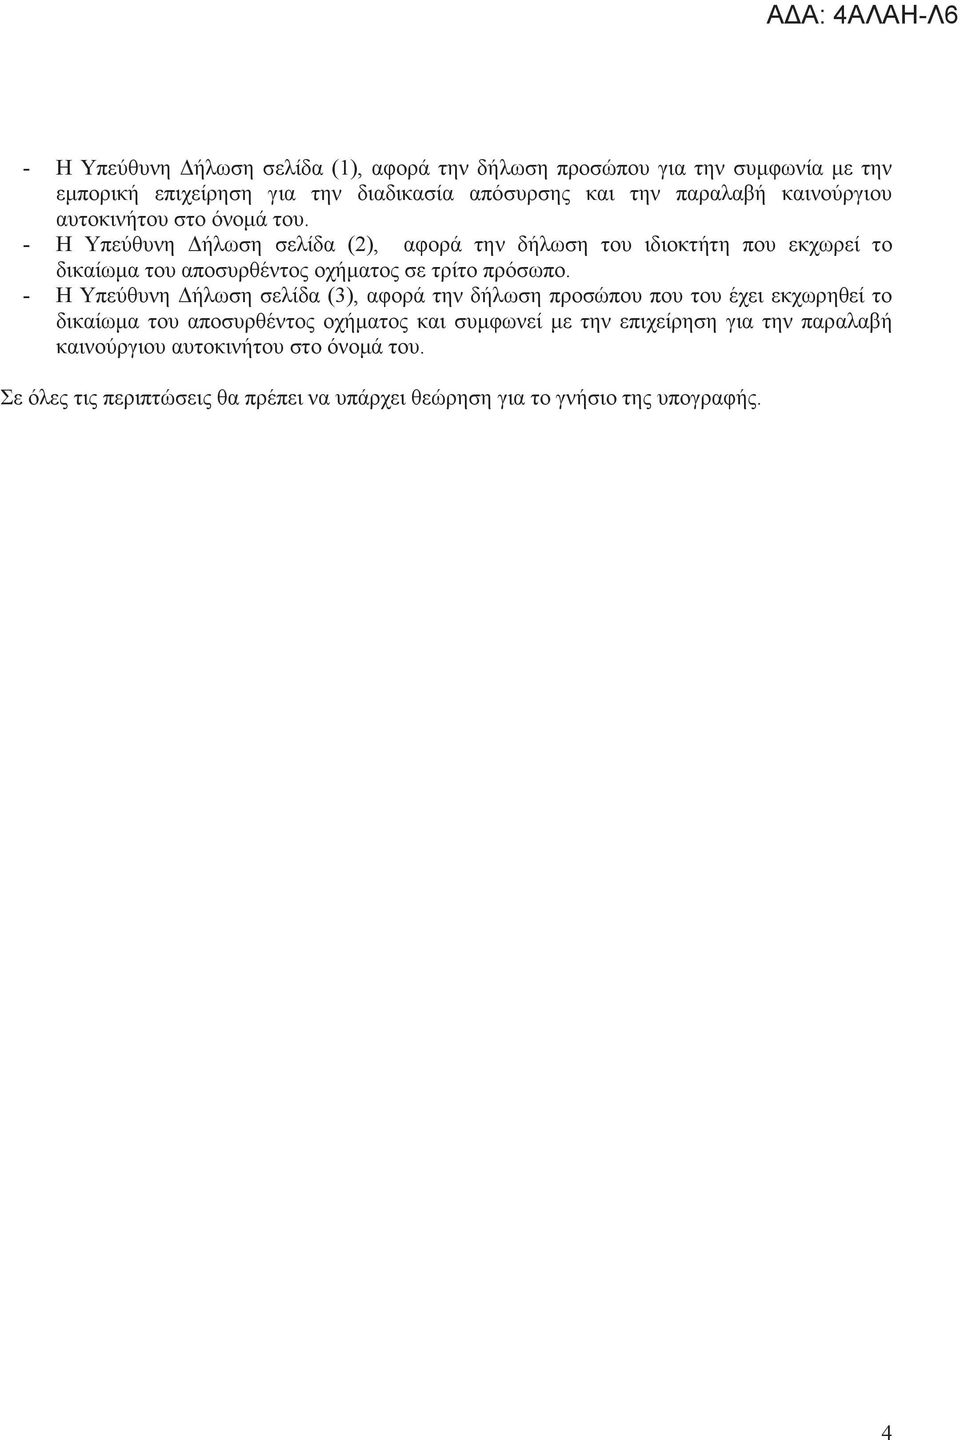 - Η Υπεύθυνη Δήλωση σελίδα (2), αφορά την δήλωση του ιδιοκτήτη που εκχωρεί το δικαίωμα του αποσυρθέντος οχήματος σε τρίτο πρόσωπο.